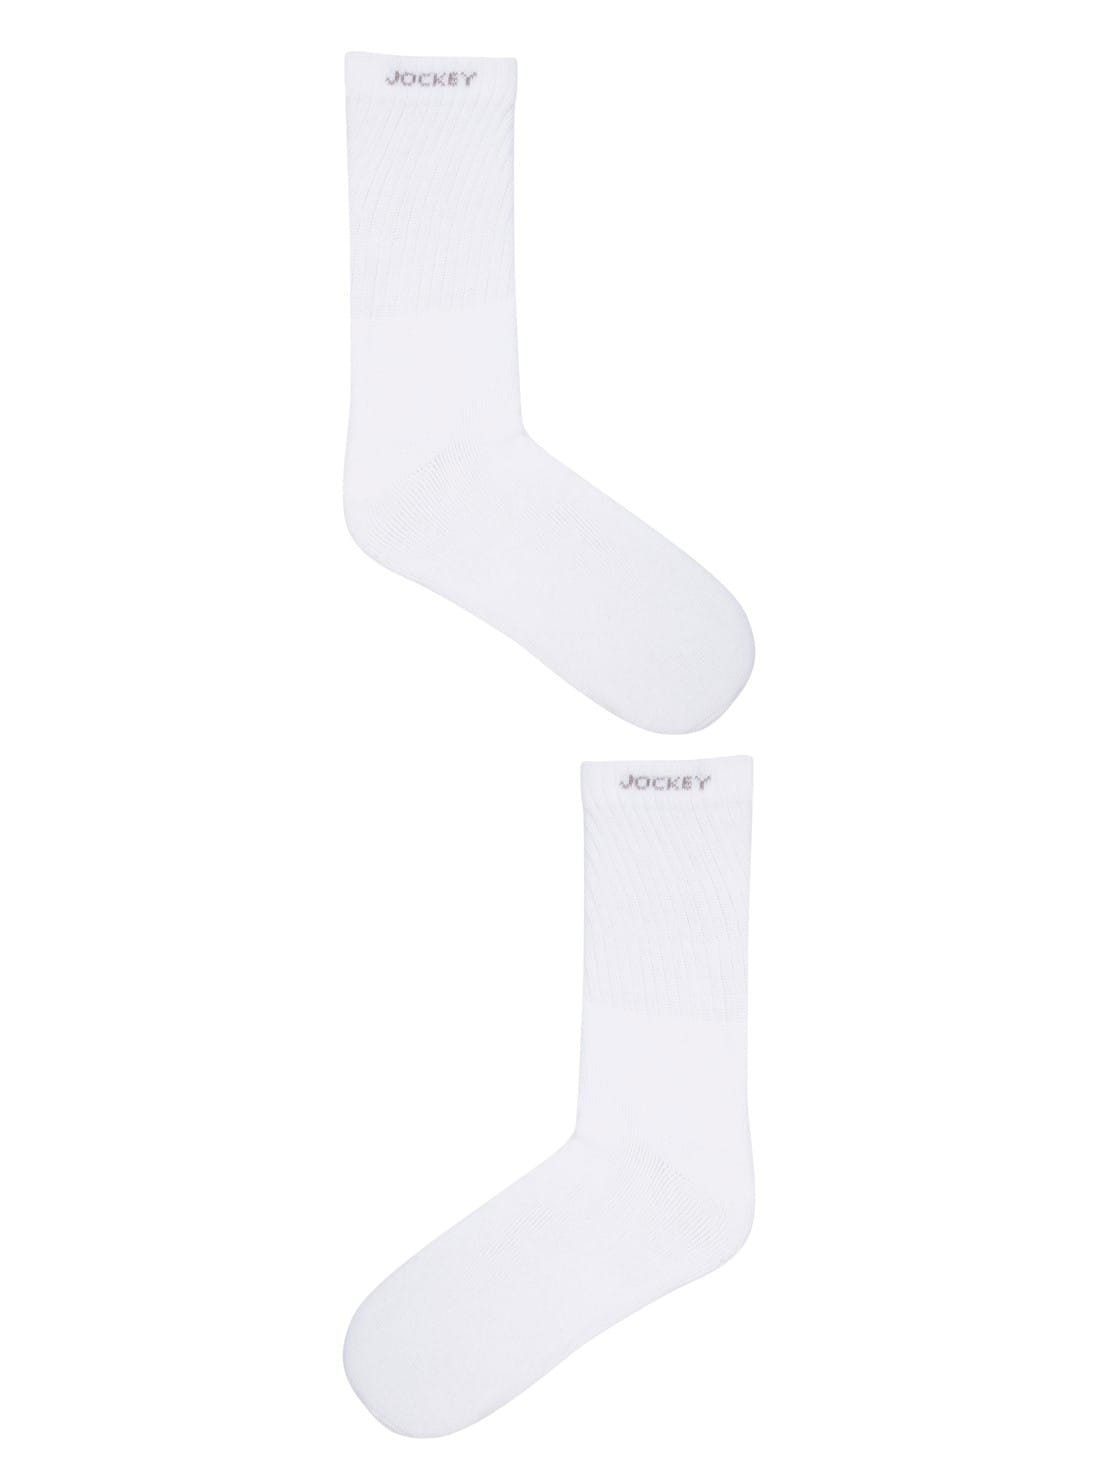 Buy White Crew Socks (Pack of 3) for Men 7030 | Jockey India